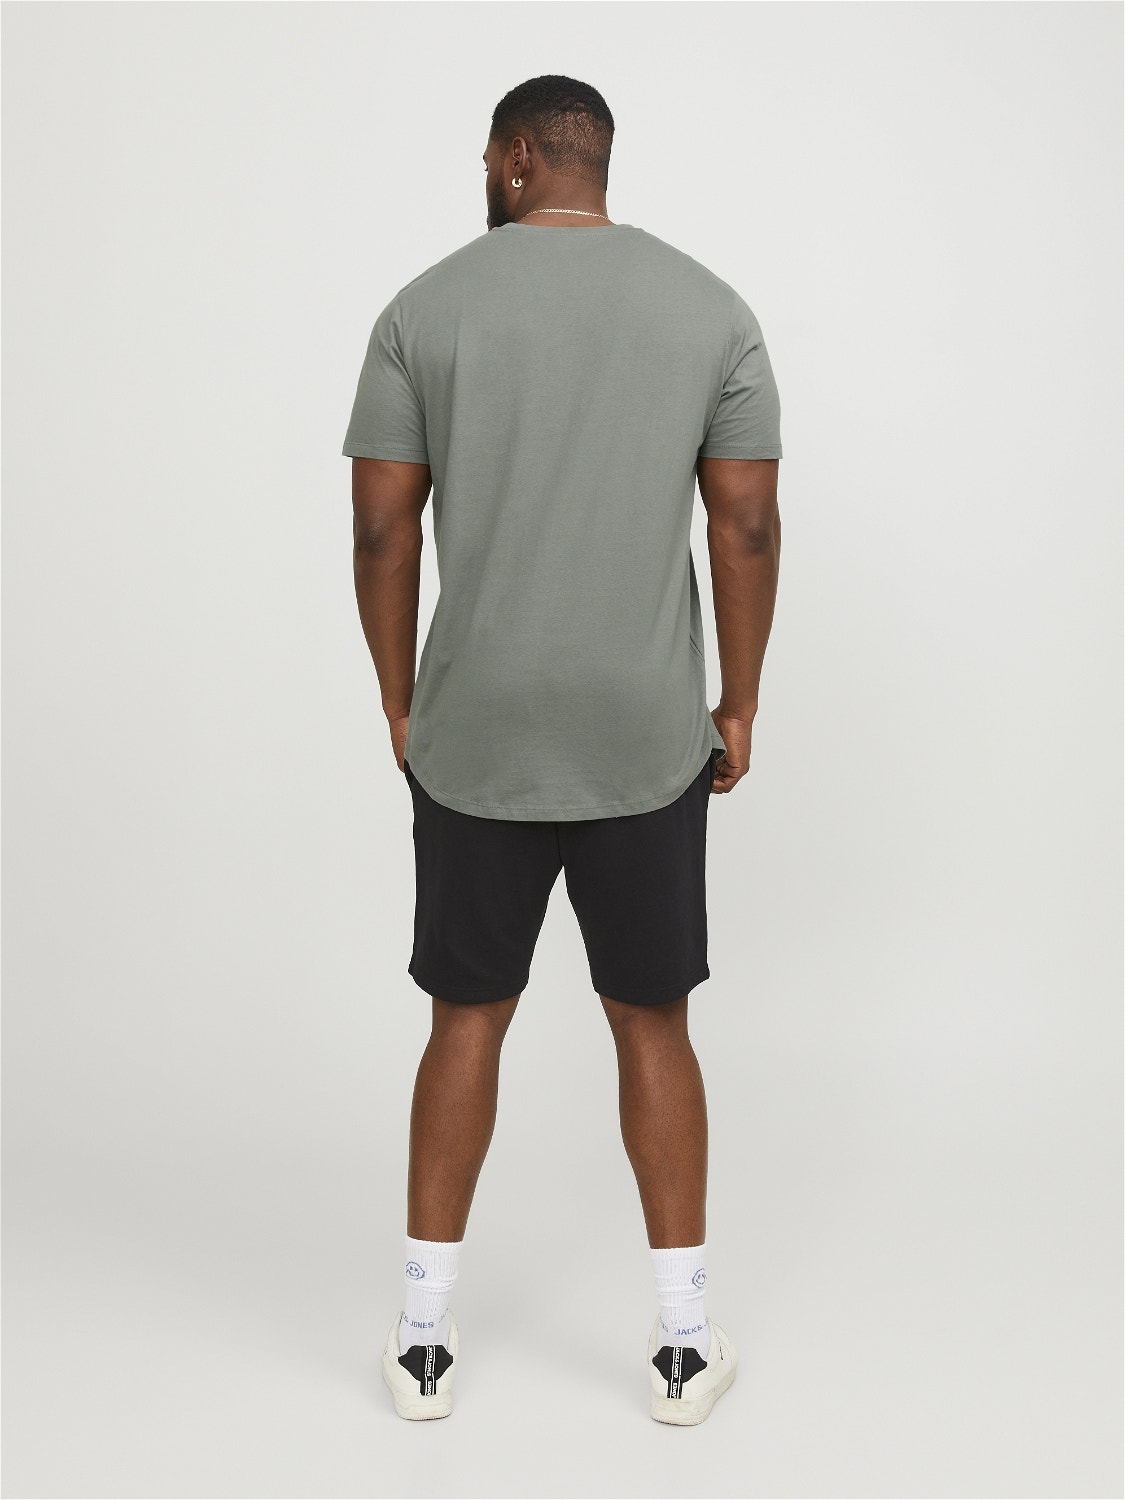 Jack & Jones Plus Size Enfärgat T-shirt -Sedona Sage - 12184933